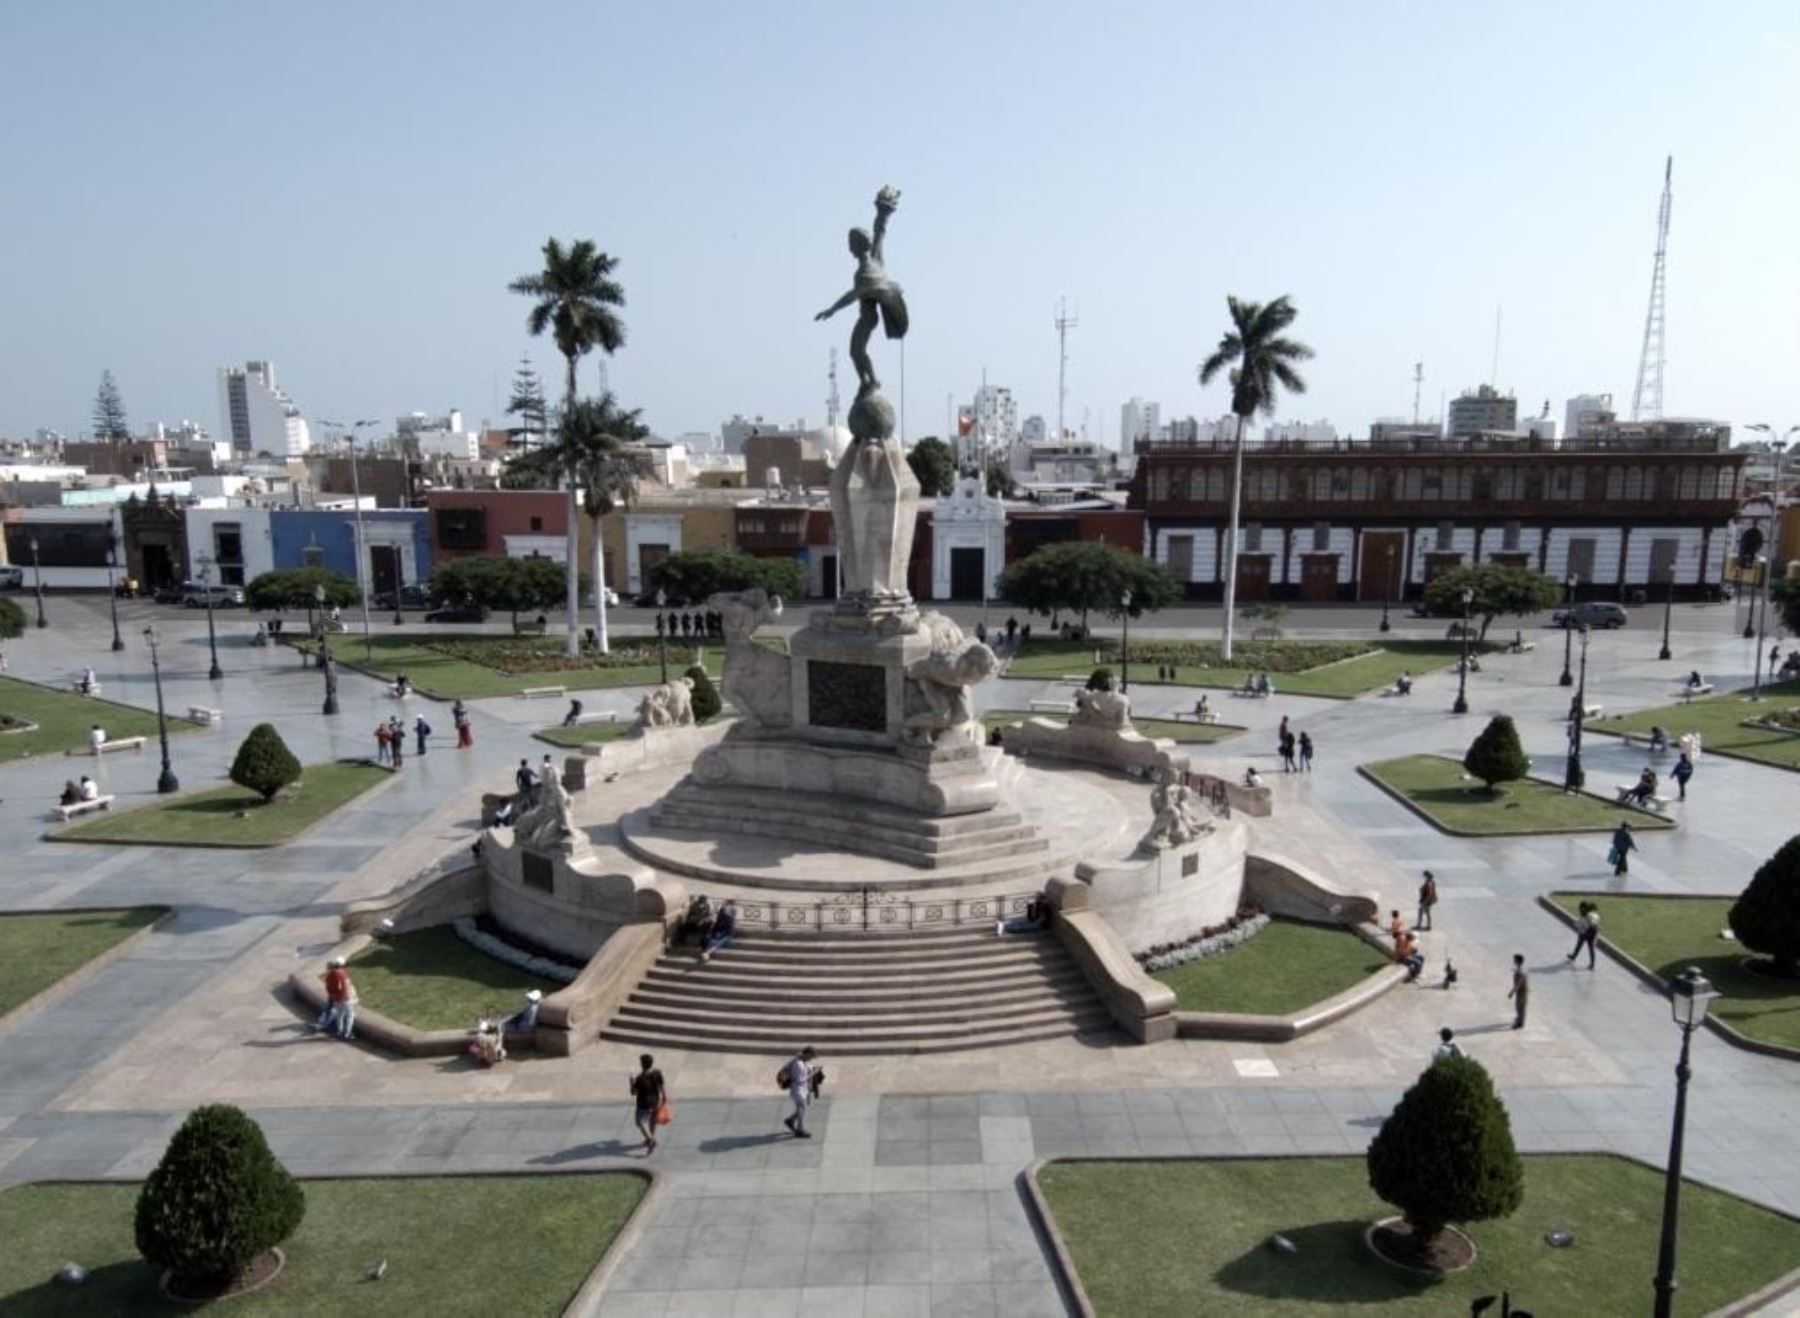 La municipalidad de Trujillo evalúa ampliar las veredas que circundan la plaza de Armas de la capital de La Libertad, para dar un mayor espacio a los peatones e incentivar el turismo.